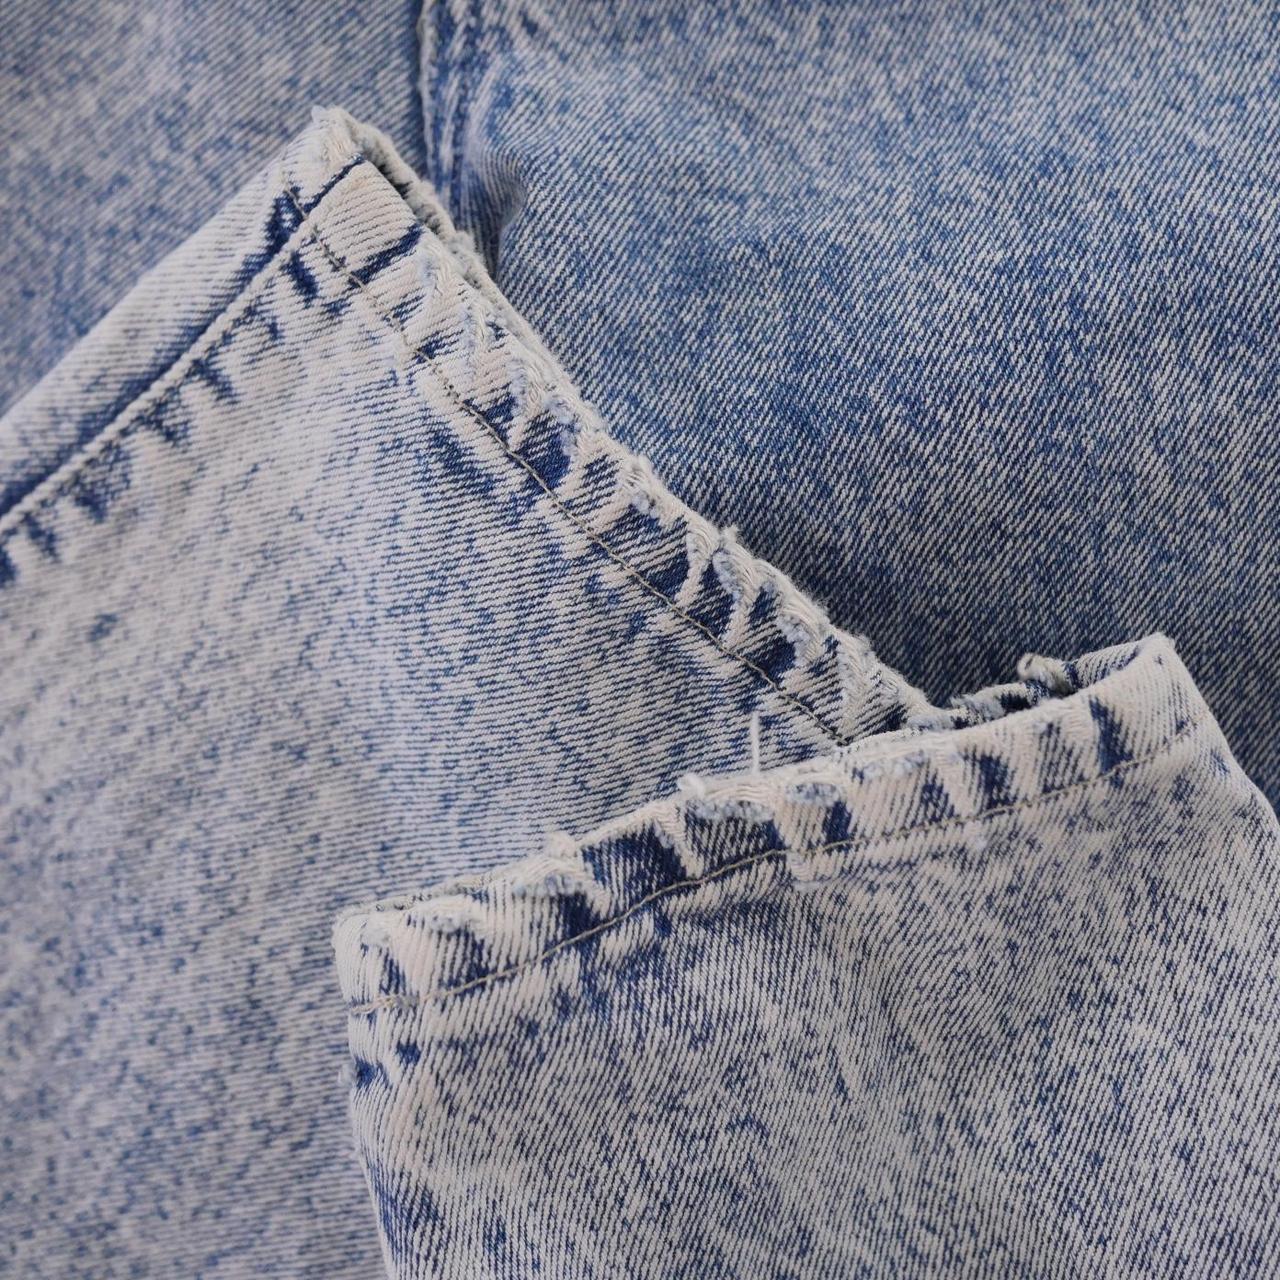 Product Image 4 - Bonjour Acid Wash jeans
8/10

28 x